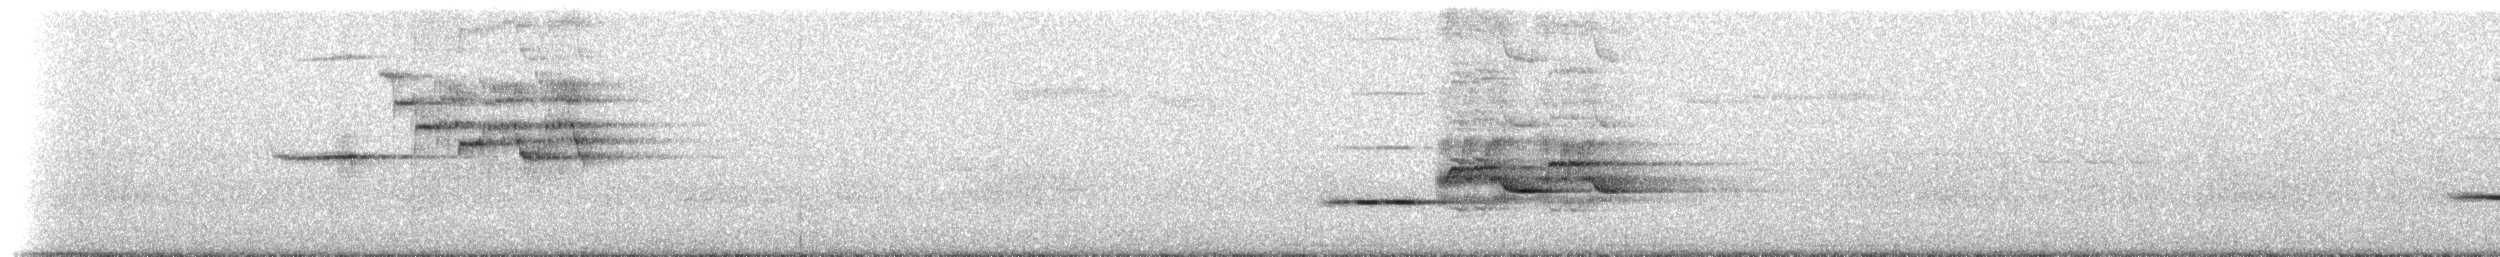 Münzevi Bülbül Ardıcı (faxoni/crymophilus) - ML85286161